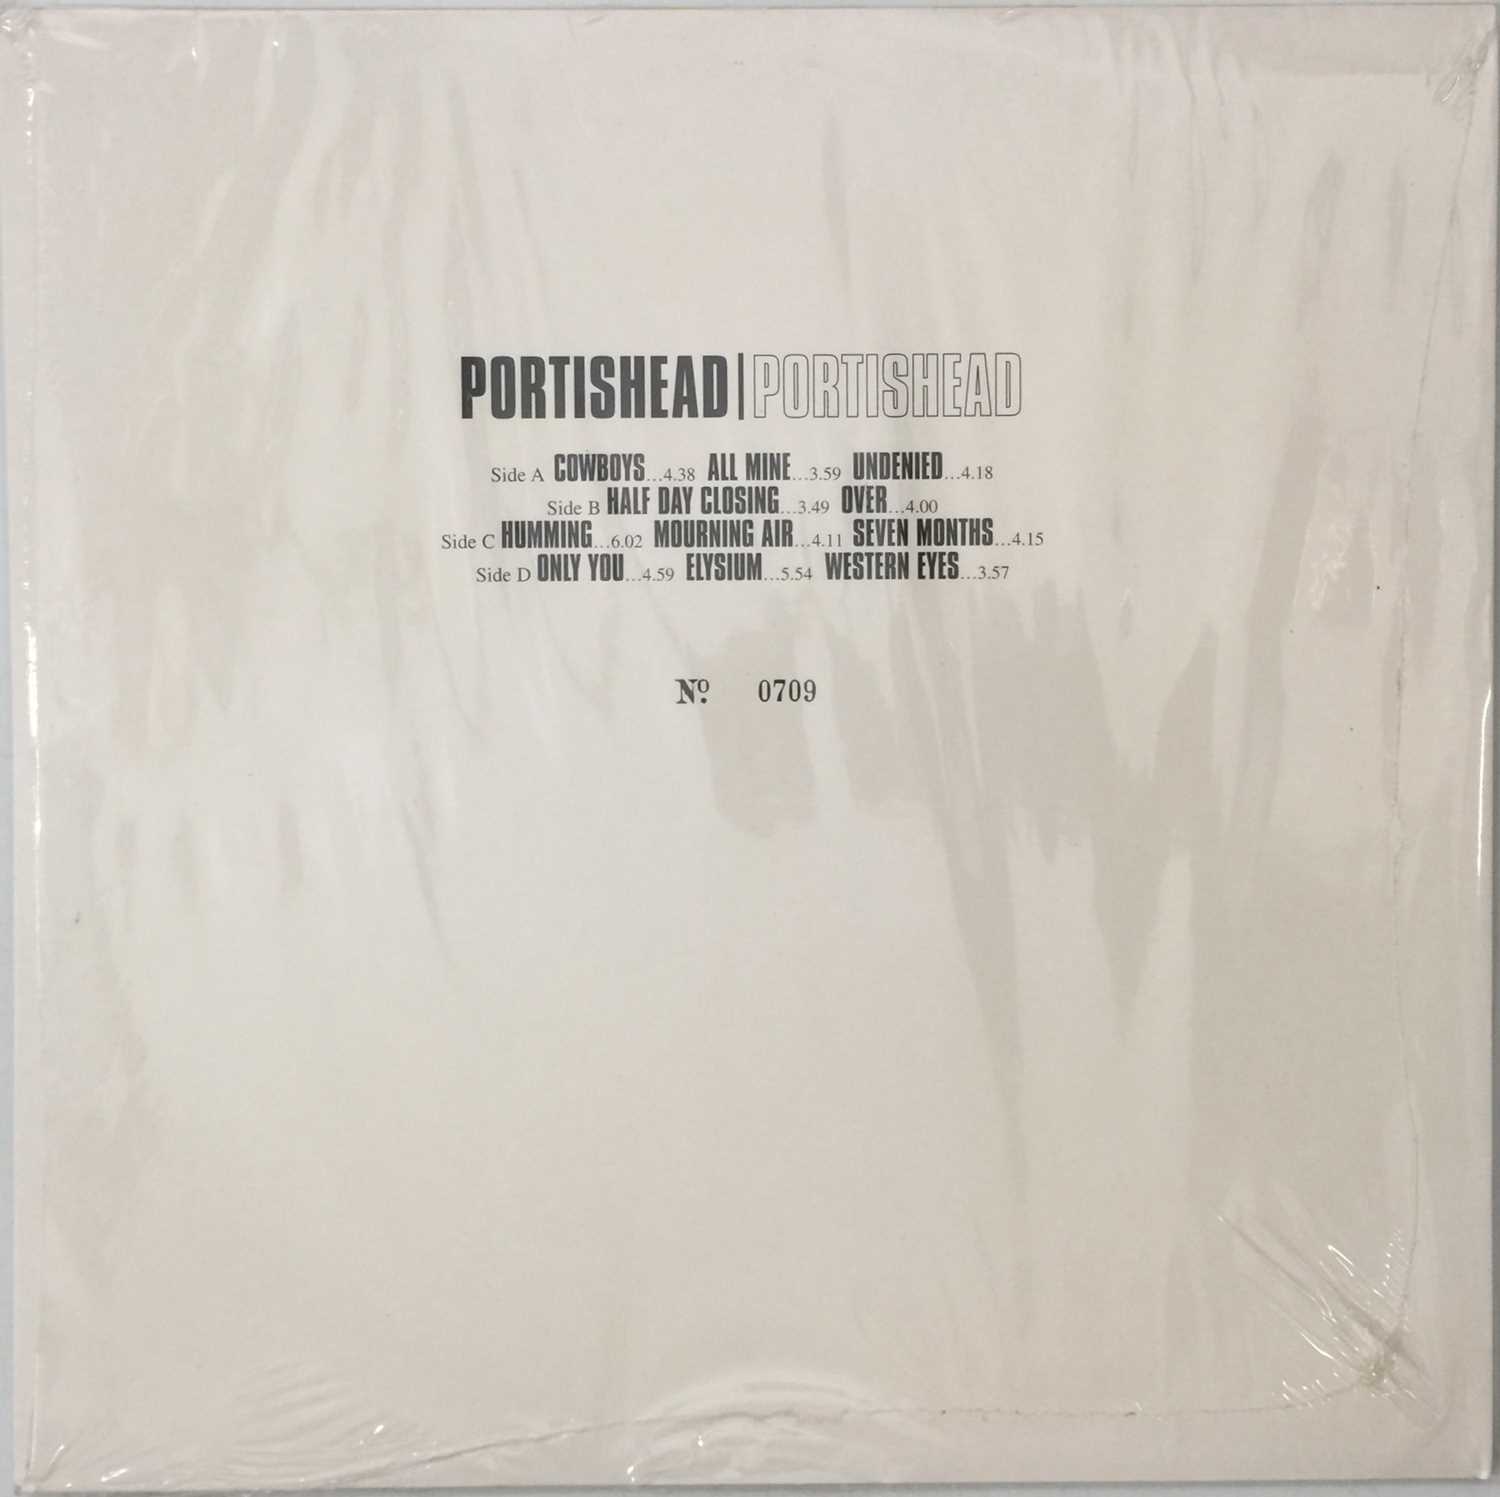 PORTISHEAD - PORTISHEAD (ORIGINAL 1997 PROMO 2 x 12" ALBUM - PORT LP PRO) - Image 3 of 7